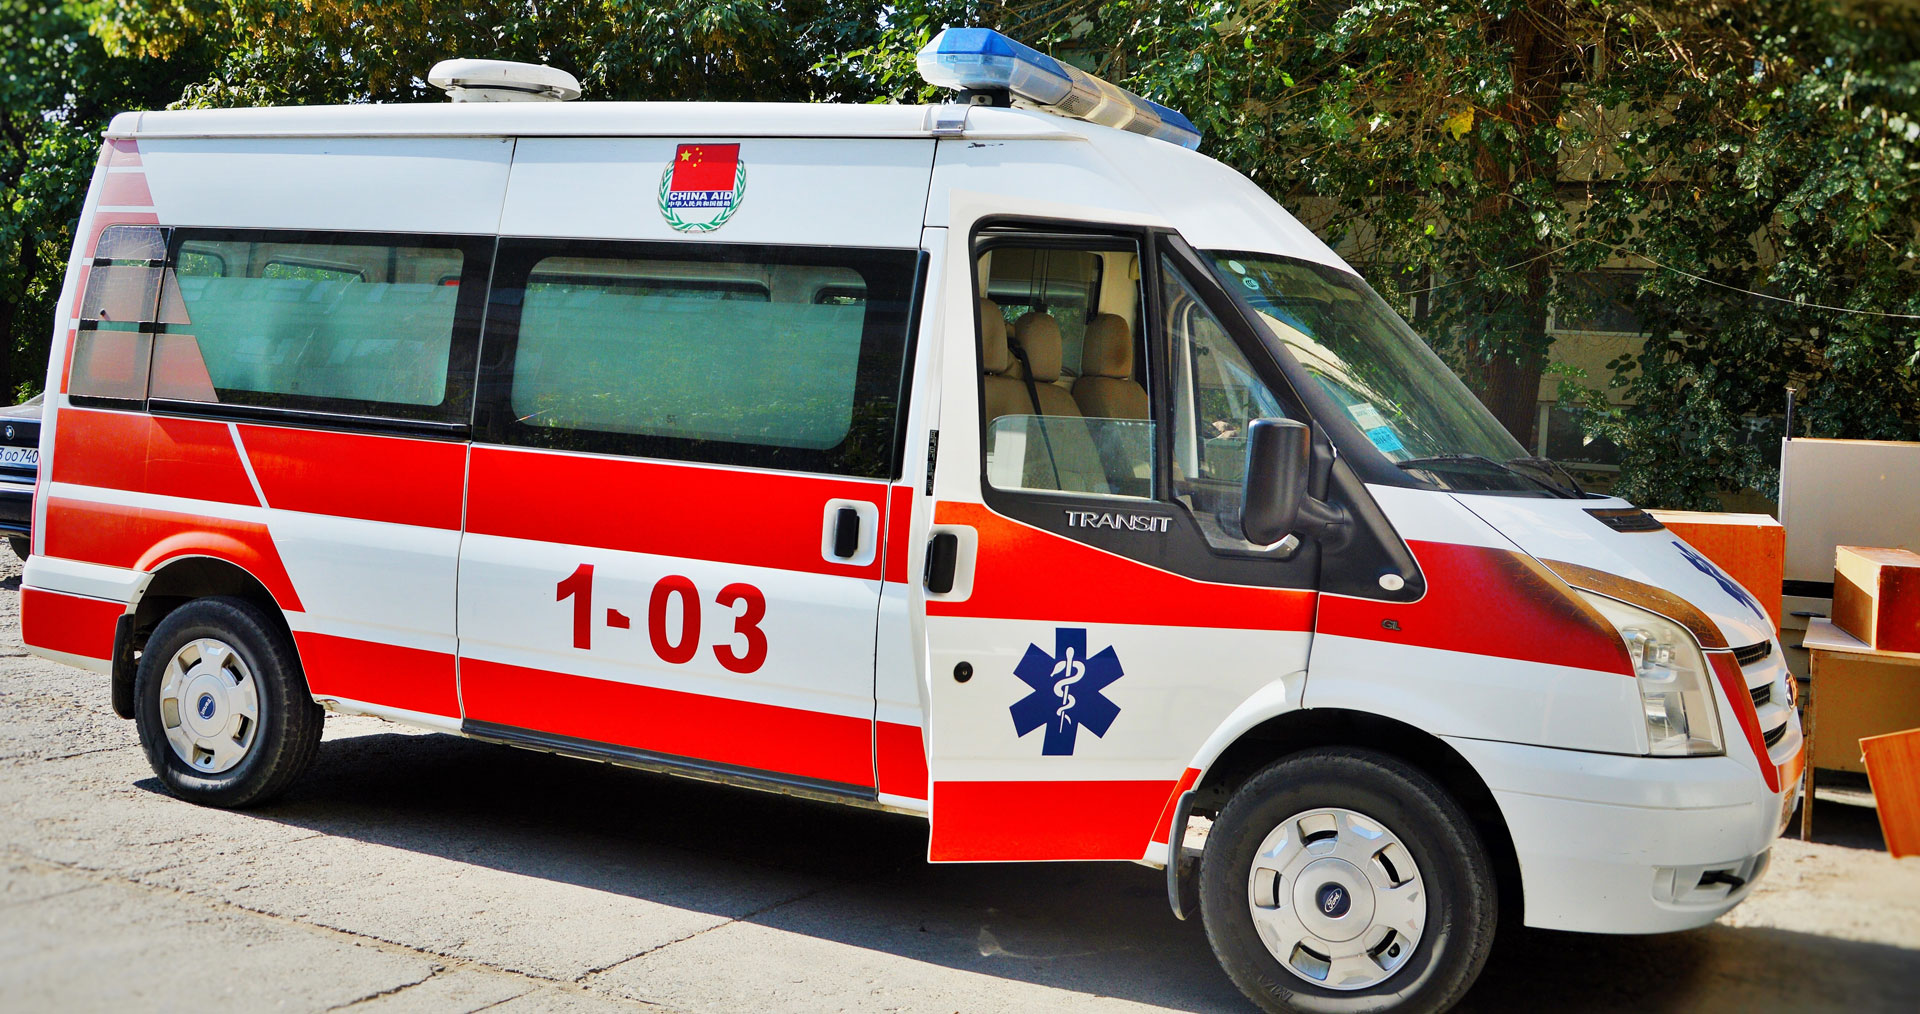 Արտակարգ դեպք՝ Երևանում. հայր ու որդի ծեծել են կանչով հասցե մեկնած բժշկին, ապա վնասել շտապօգնության ավտոմեքենան